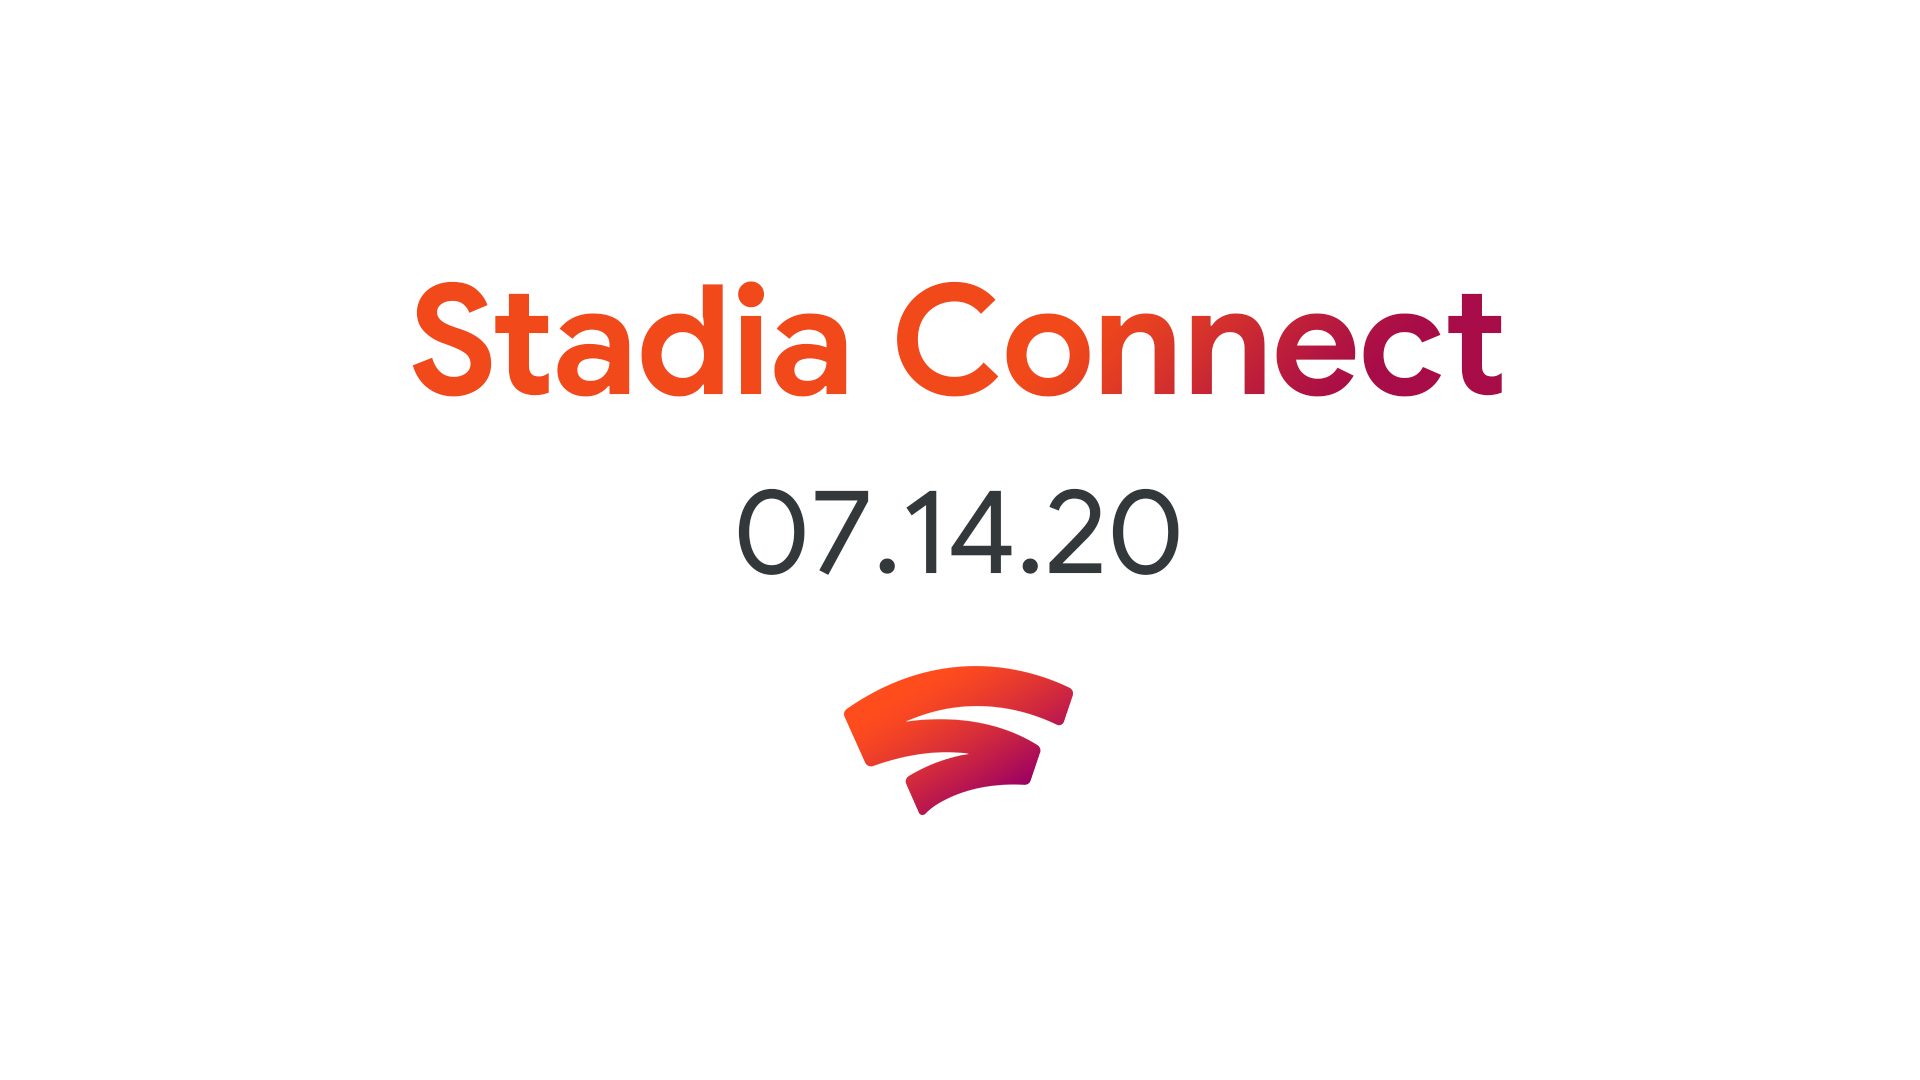 Google anuncia que o próximo Stadia Connect será realizado em 14 de julho